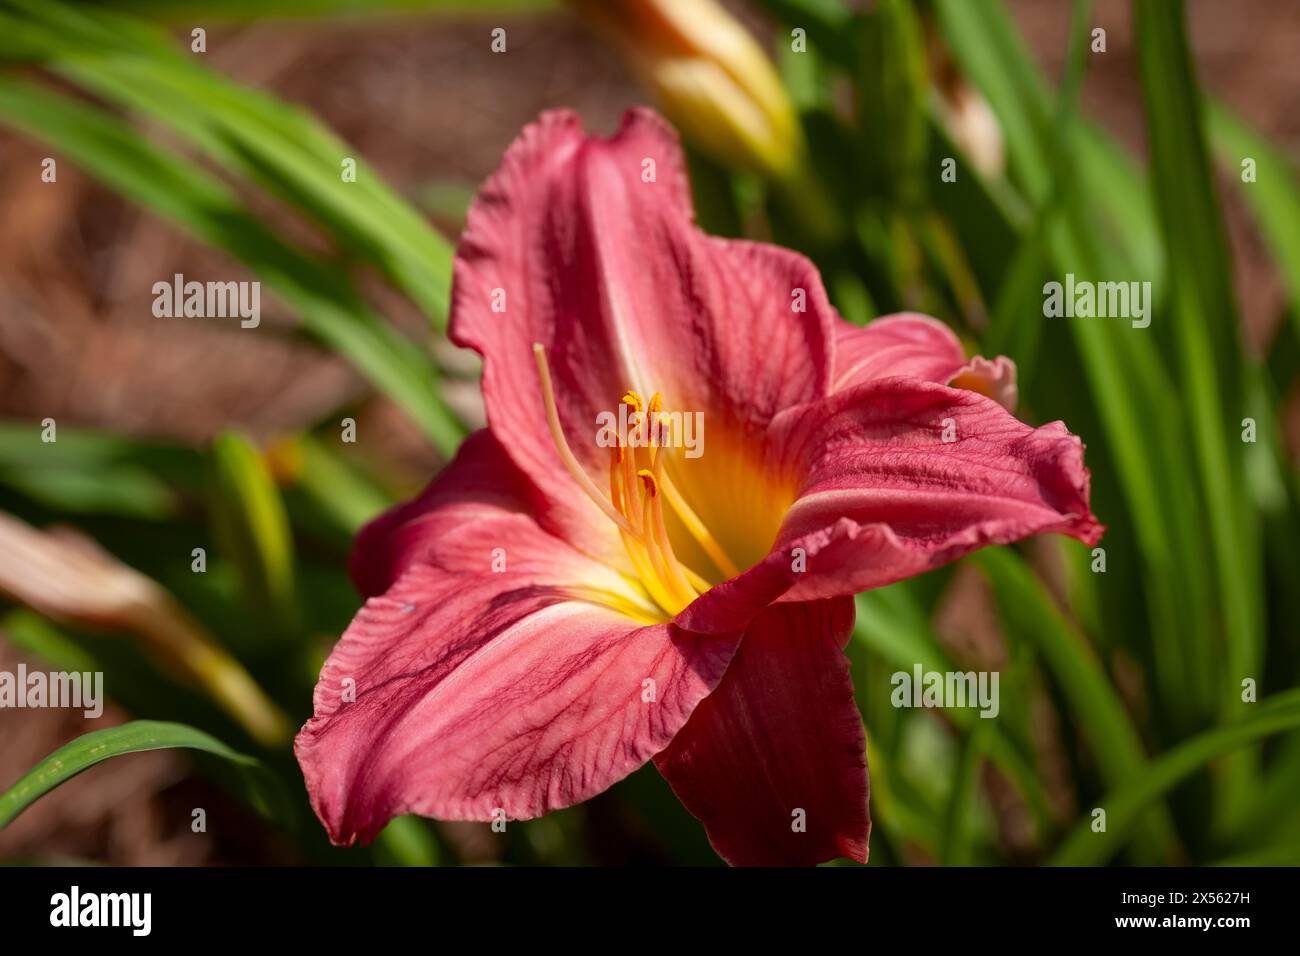 Fleur de Lily Fresh Day, dans un jardin de fleurs, couleur rose foncé, fond doux Banque D'Images